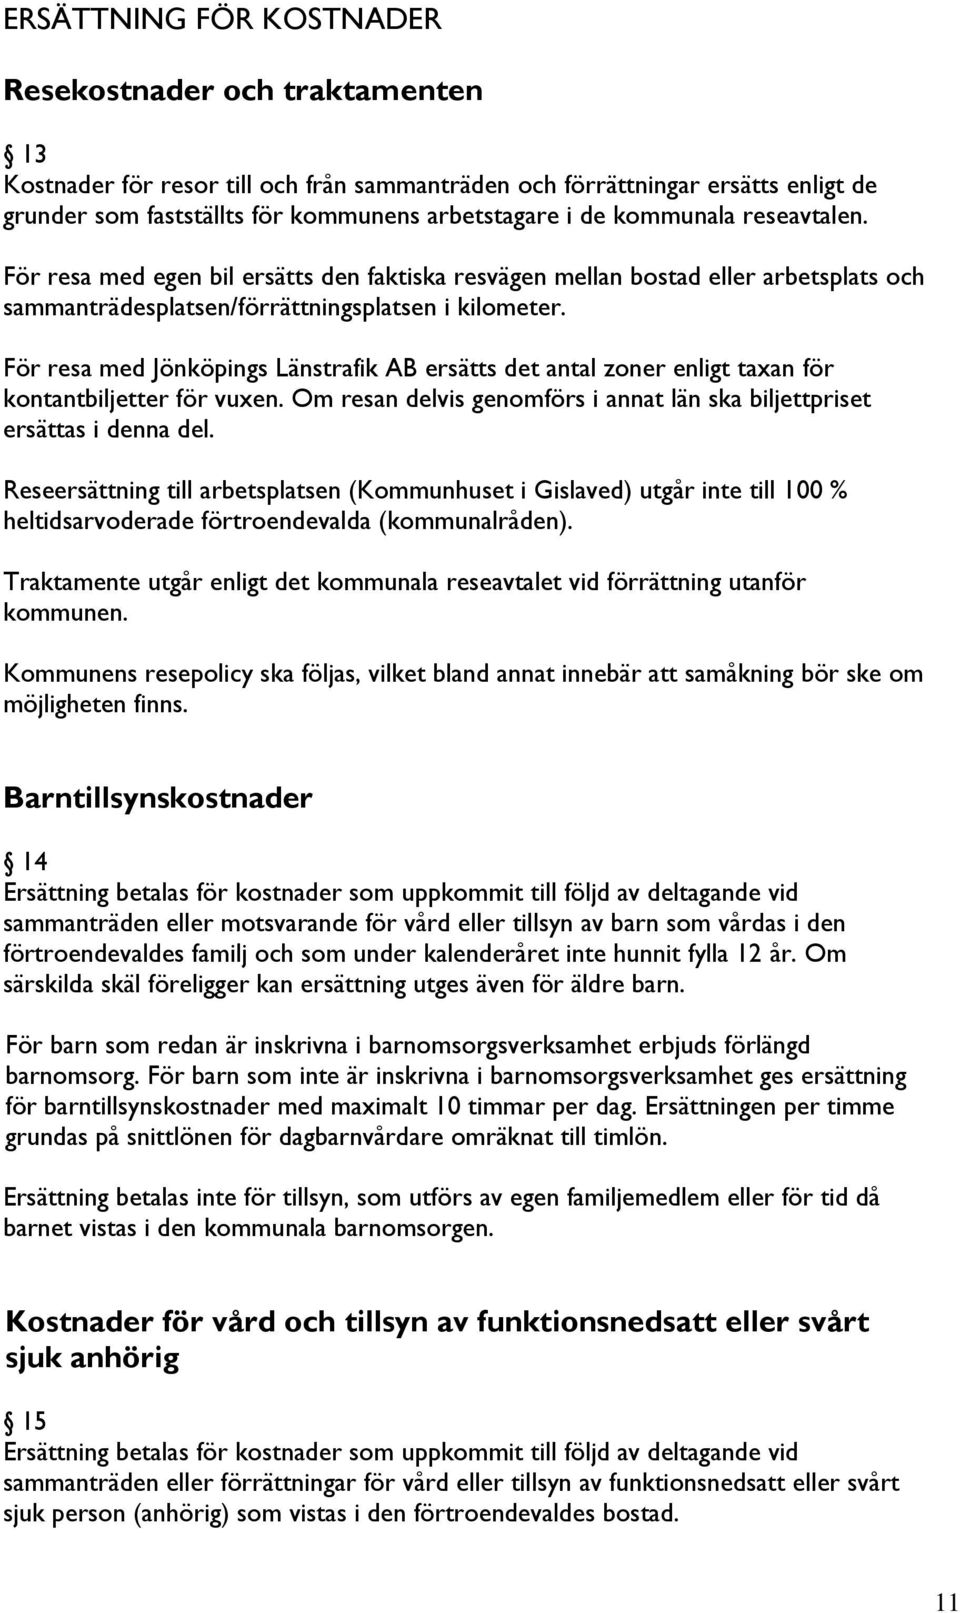 För resa med Jönköpings Länstrafik AB ersätts det antal zoner enligt taxan för kontantbiljetter för vuxen. Om resan delvis genomförs i annat län ska biljettpriset ersättas i denna del.